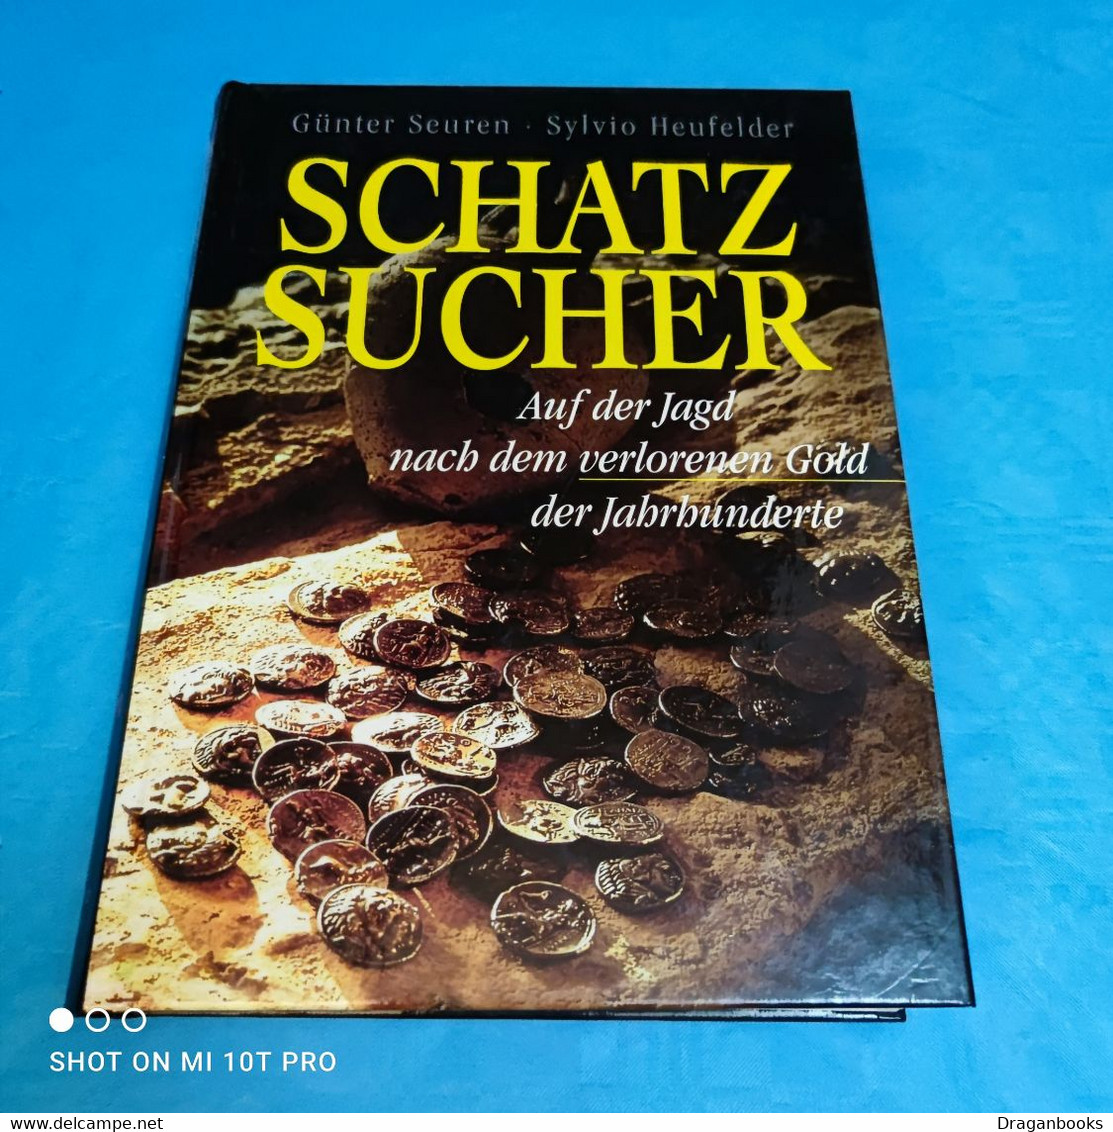 Günter Seuren / Sylvio Heufelder - Schatzsucher - Unclassified